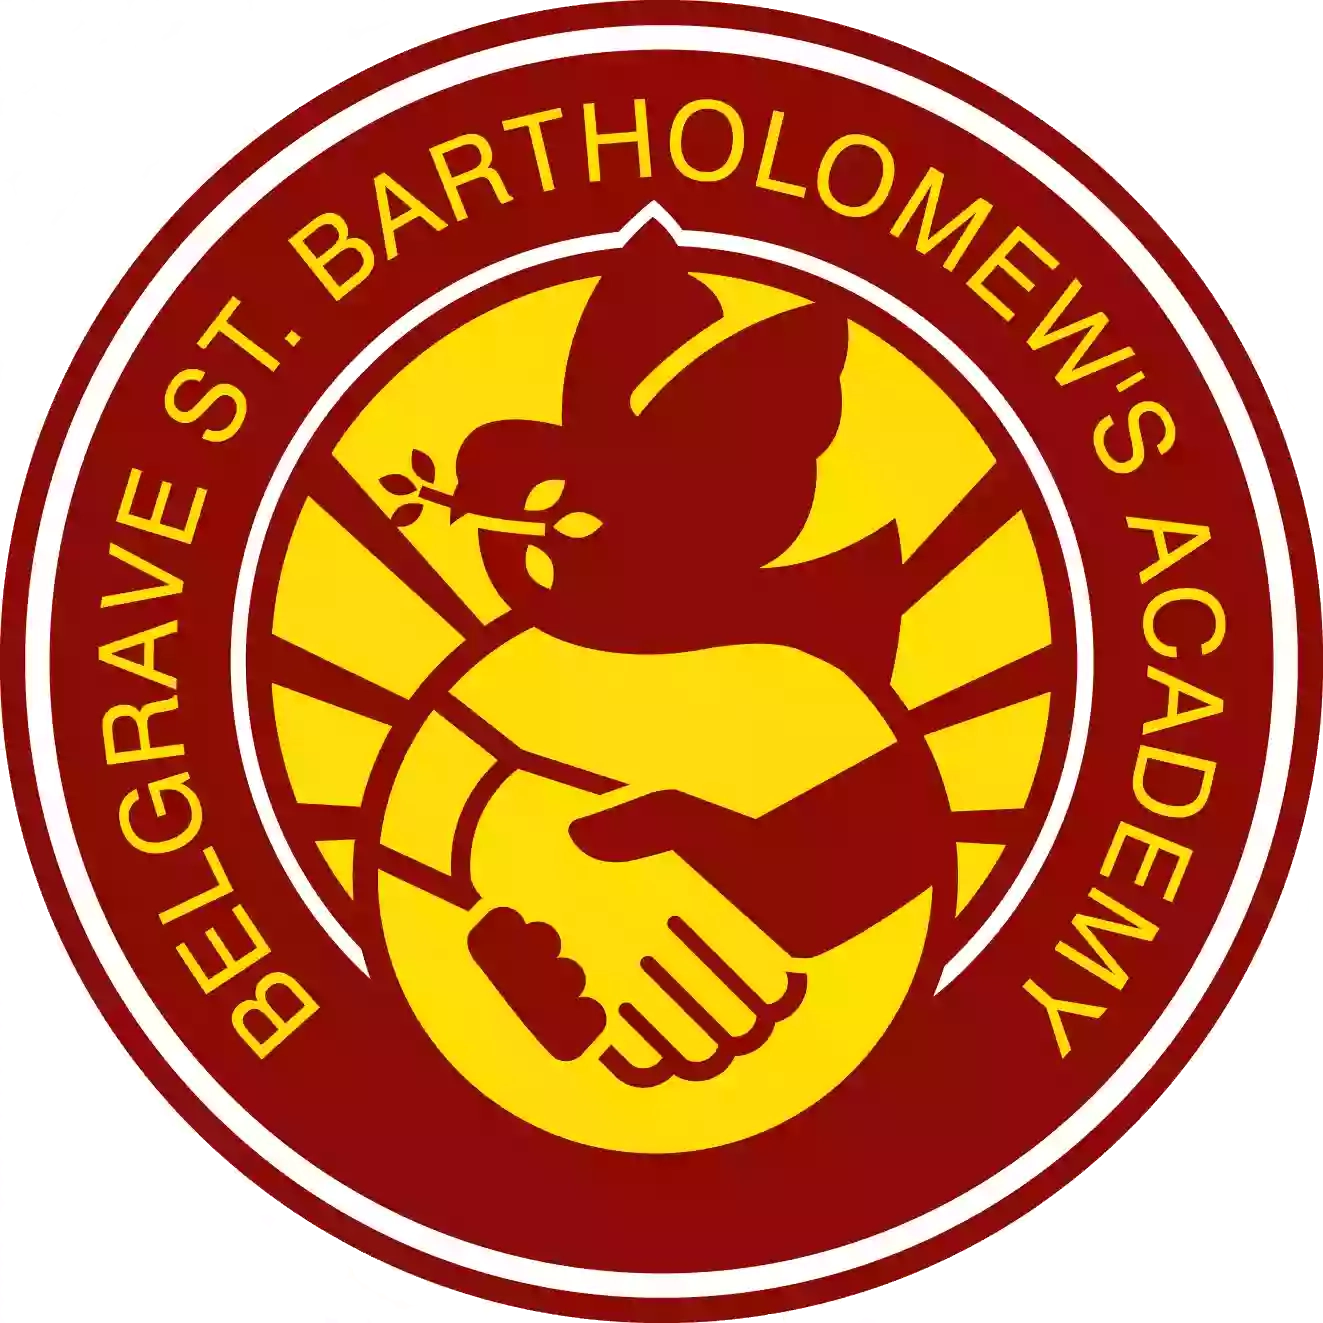 Belgrave St. Bartholomew's Academy